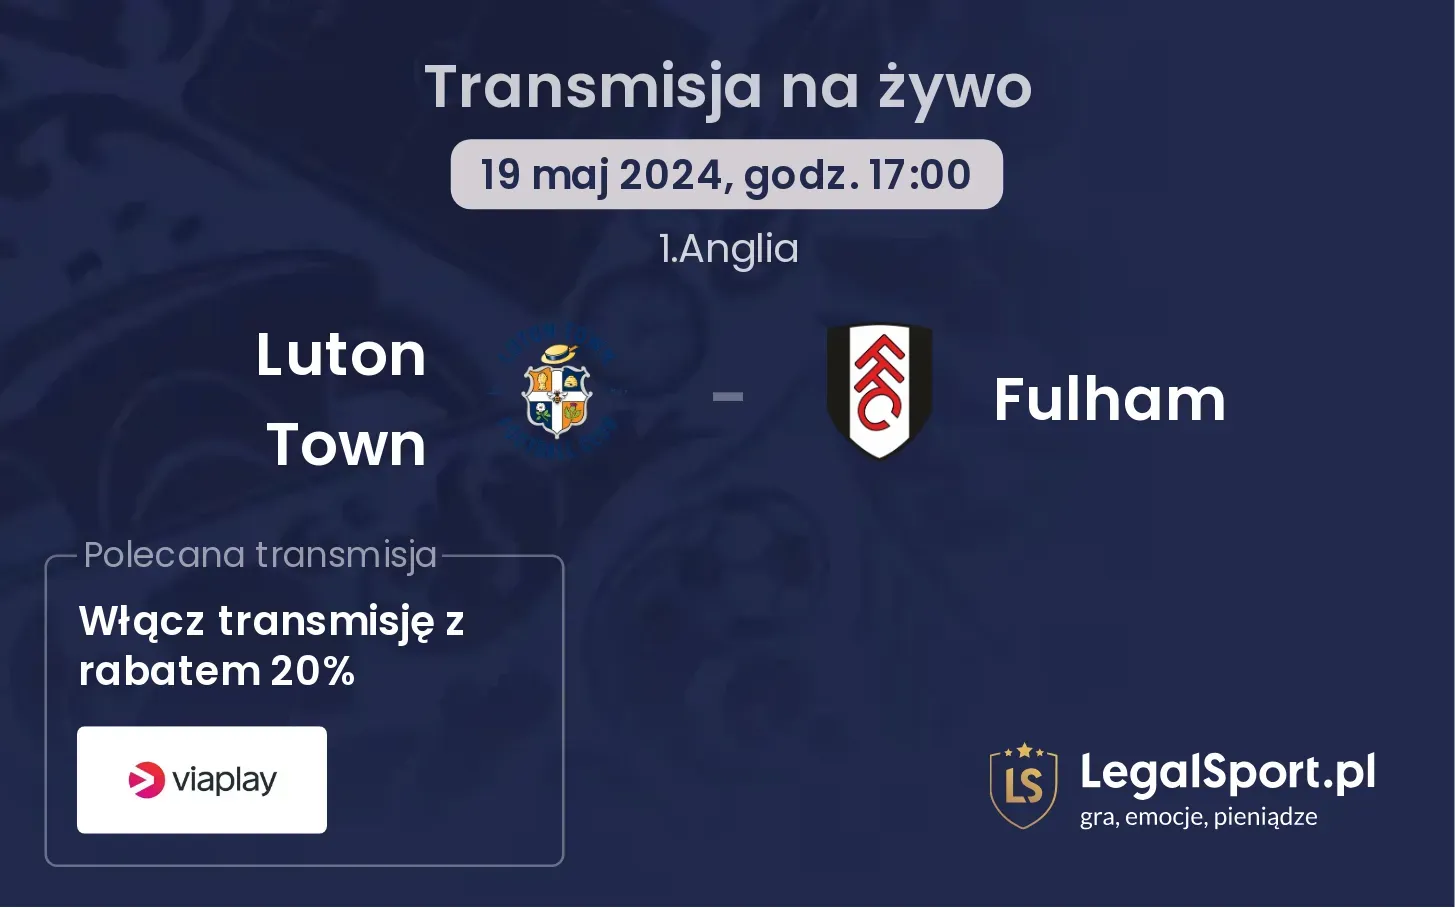 Luton Town - Fulham transmisja na żywo